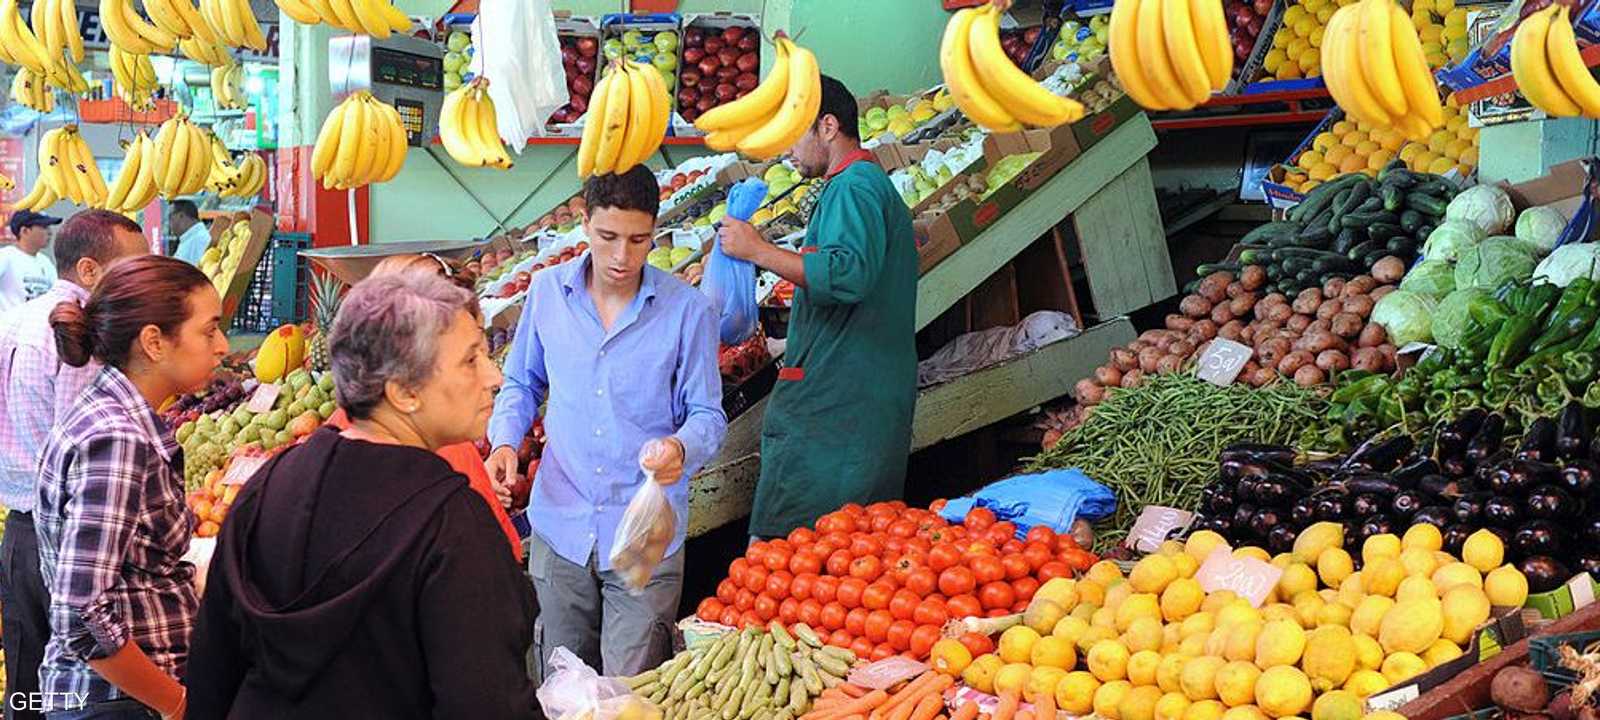 من المتوقع أن يتباطأ التضخم في المغرب إلى 0.7 في 2019